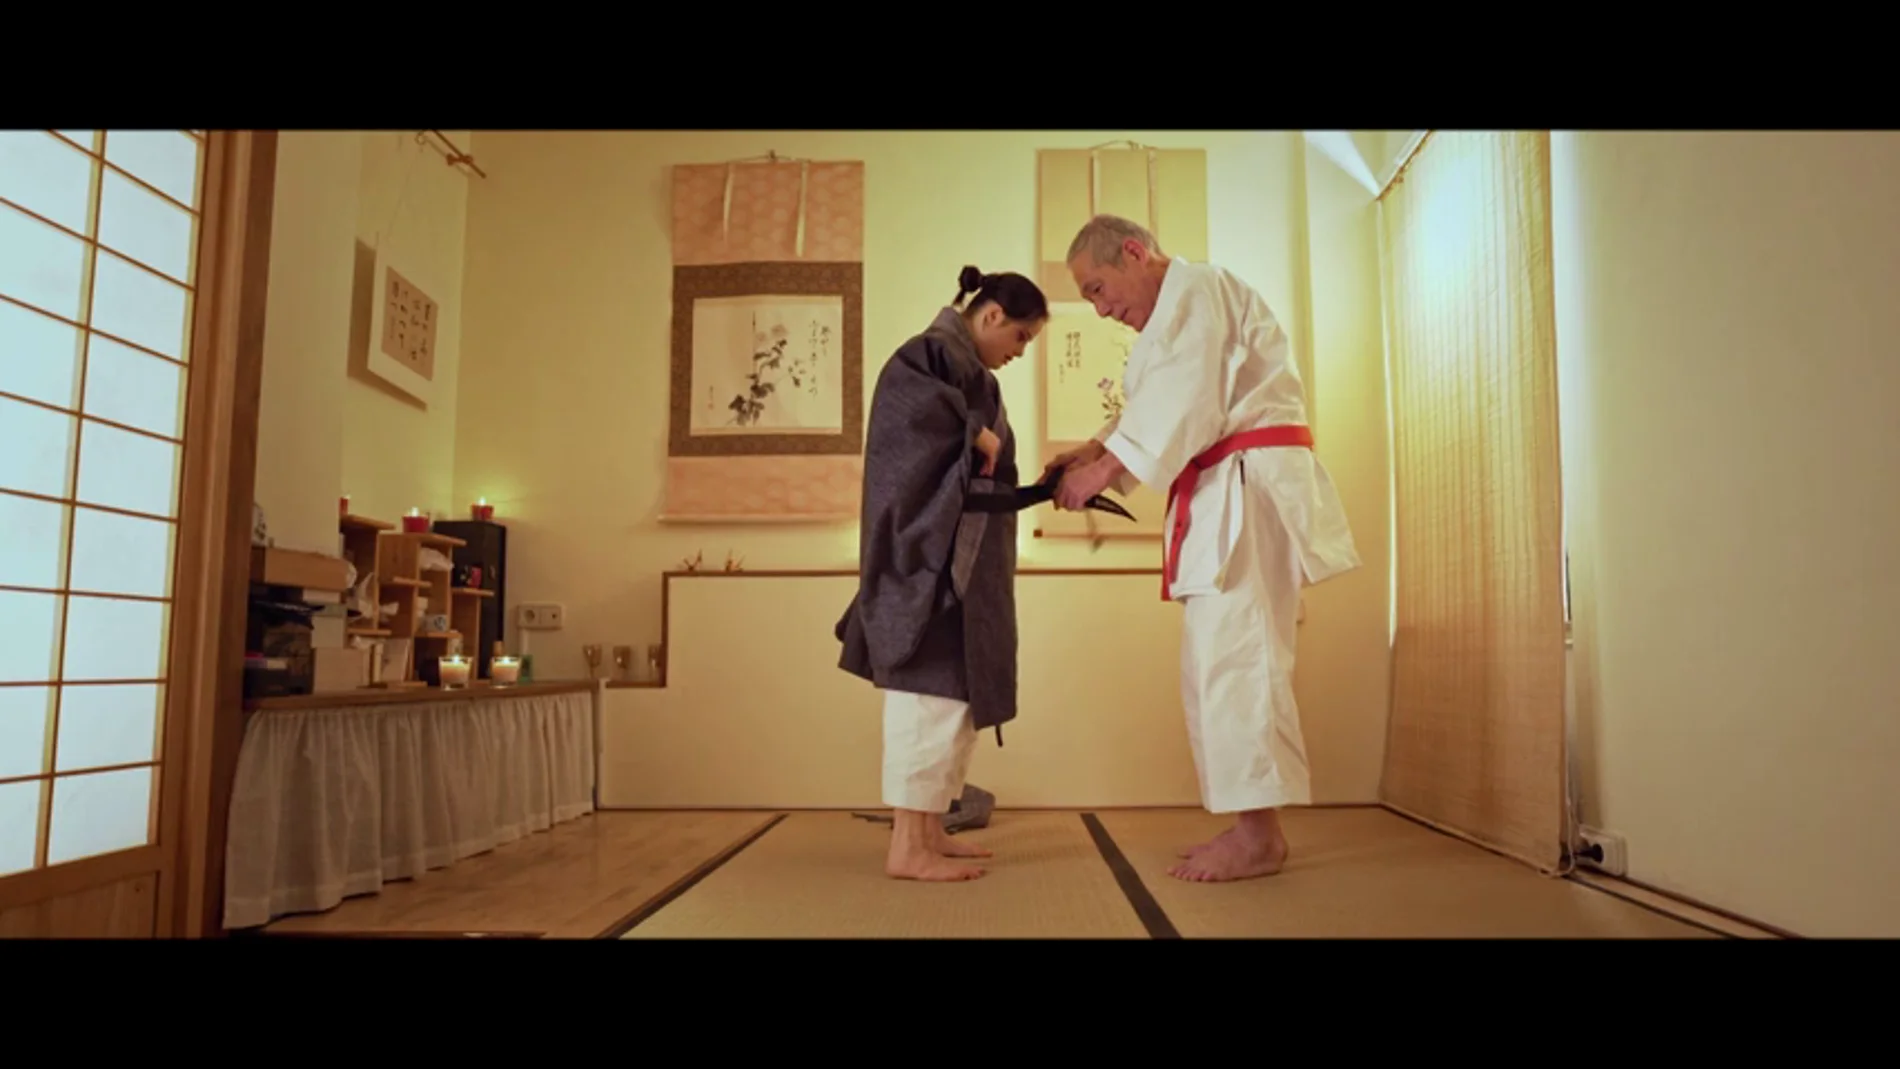 El maestro Ishimi le pone el cinturón negro a Andrea: "Ya lo has conseguido"